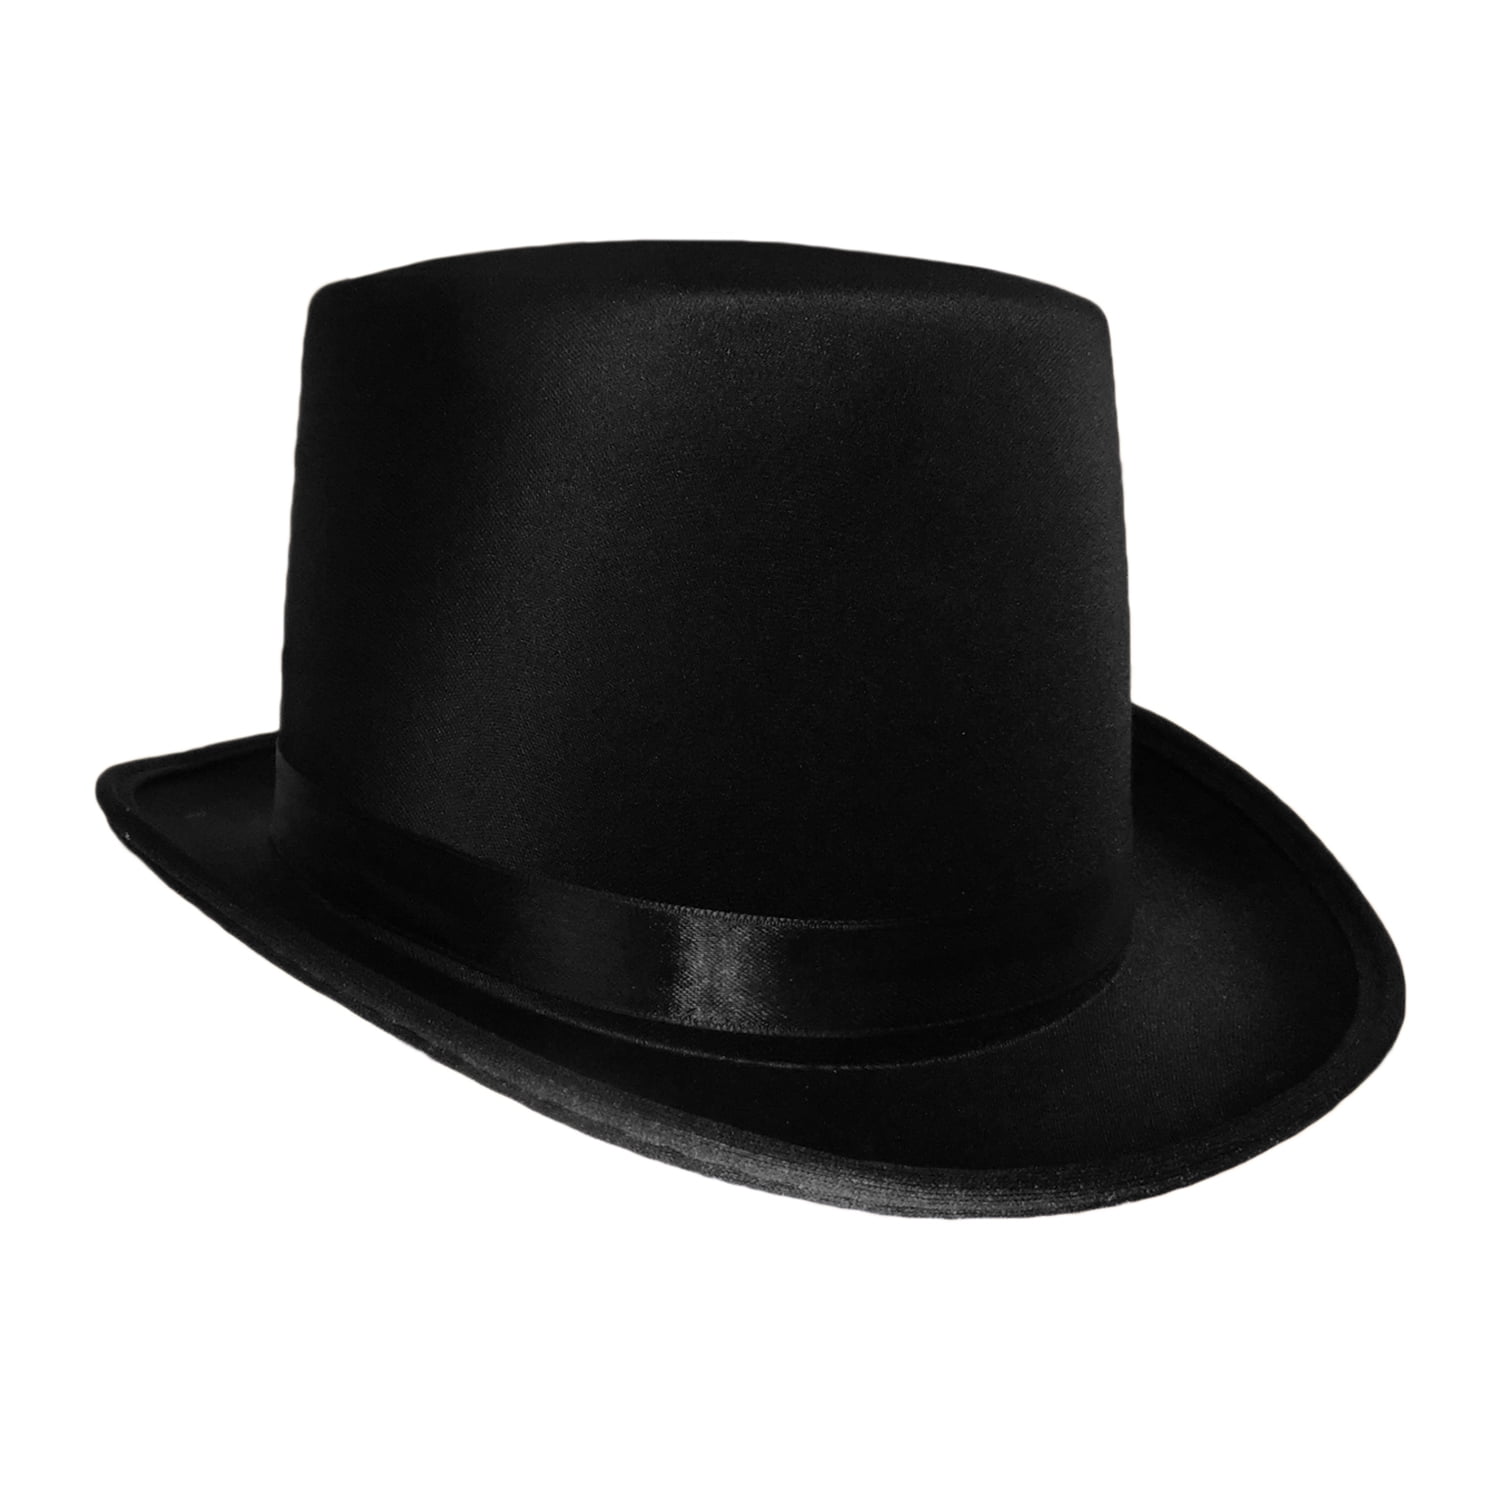 Adult Satin Top Hat Magician Gentleman Roaring 20s Tuxedo Formal Costume Top Hat 